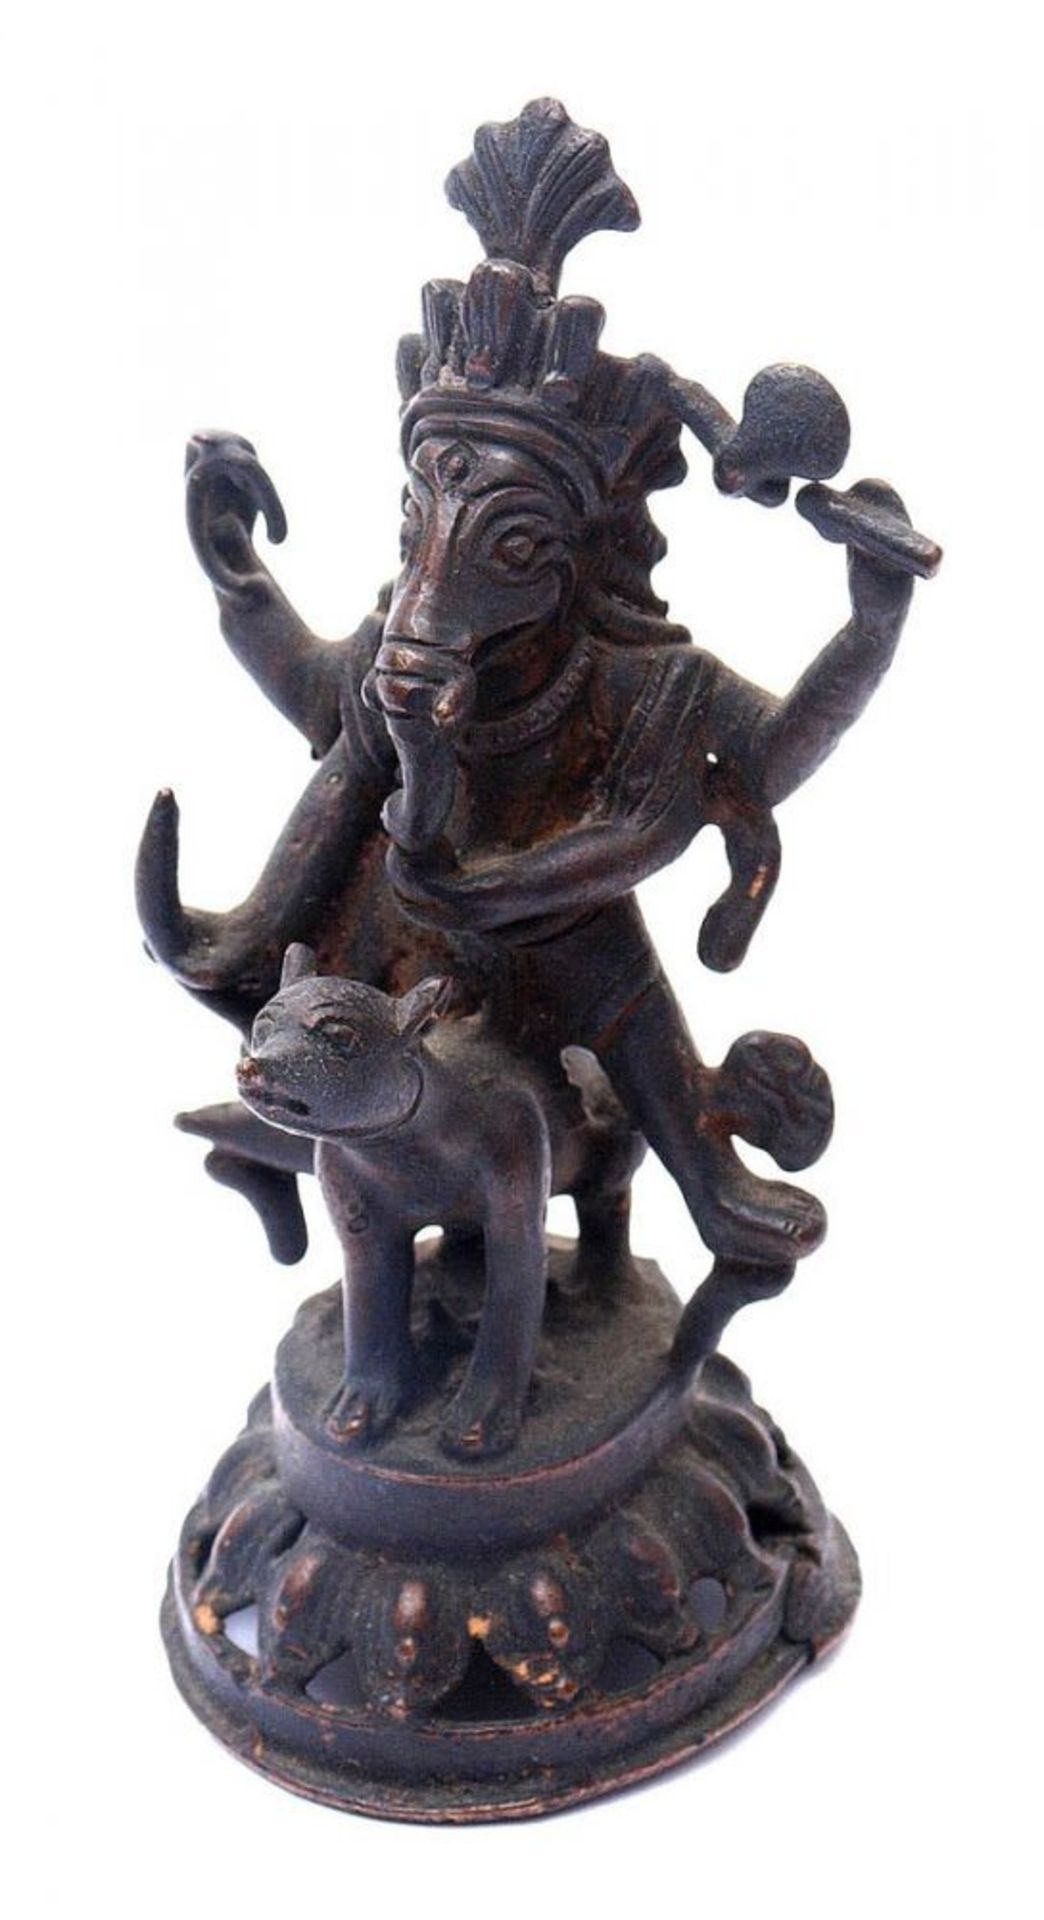 Ganesh Auf einem Fabeltier reitend. Bronze mit dunkler Patina. H.11cm.